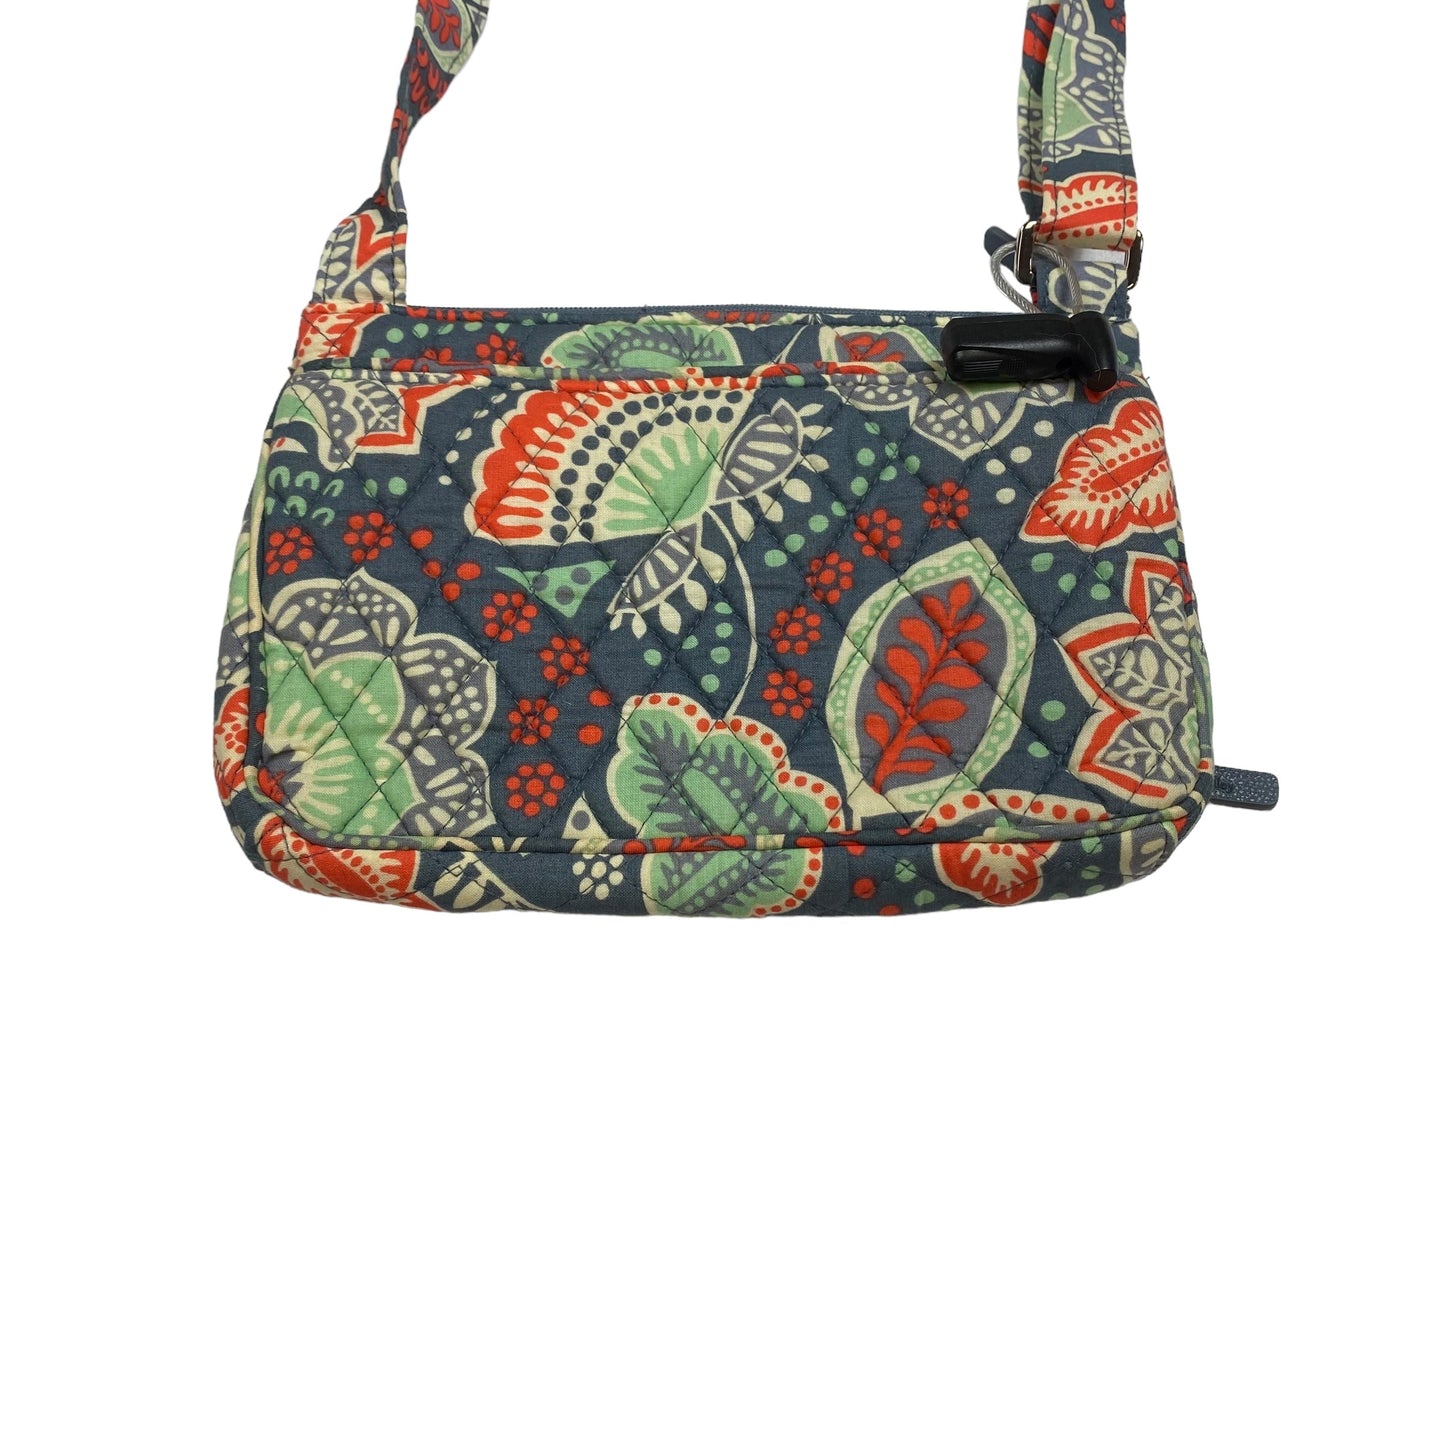 Handbag By Vera Bradley  Size: Small